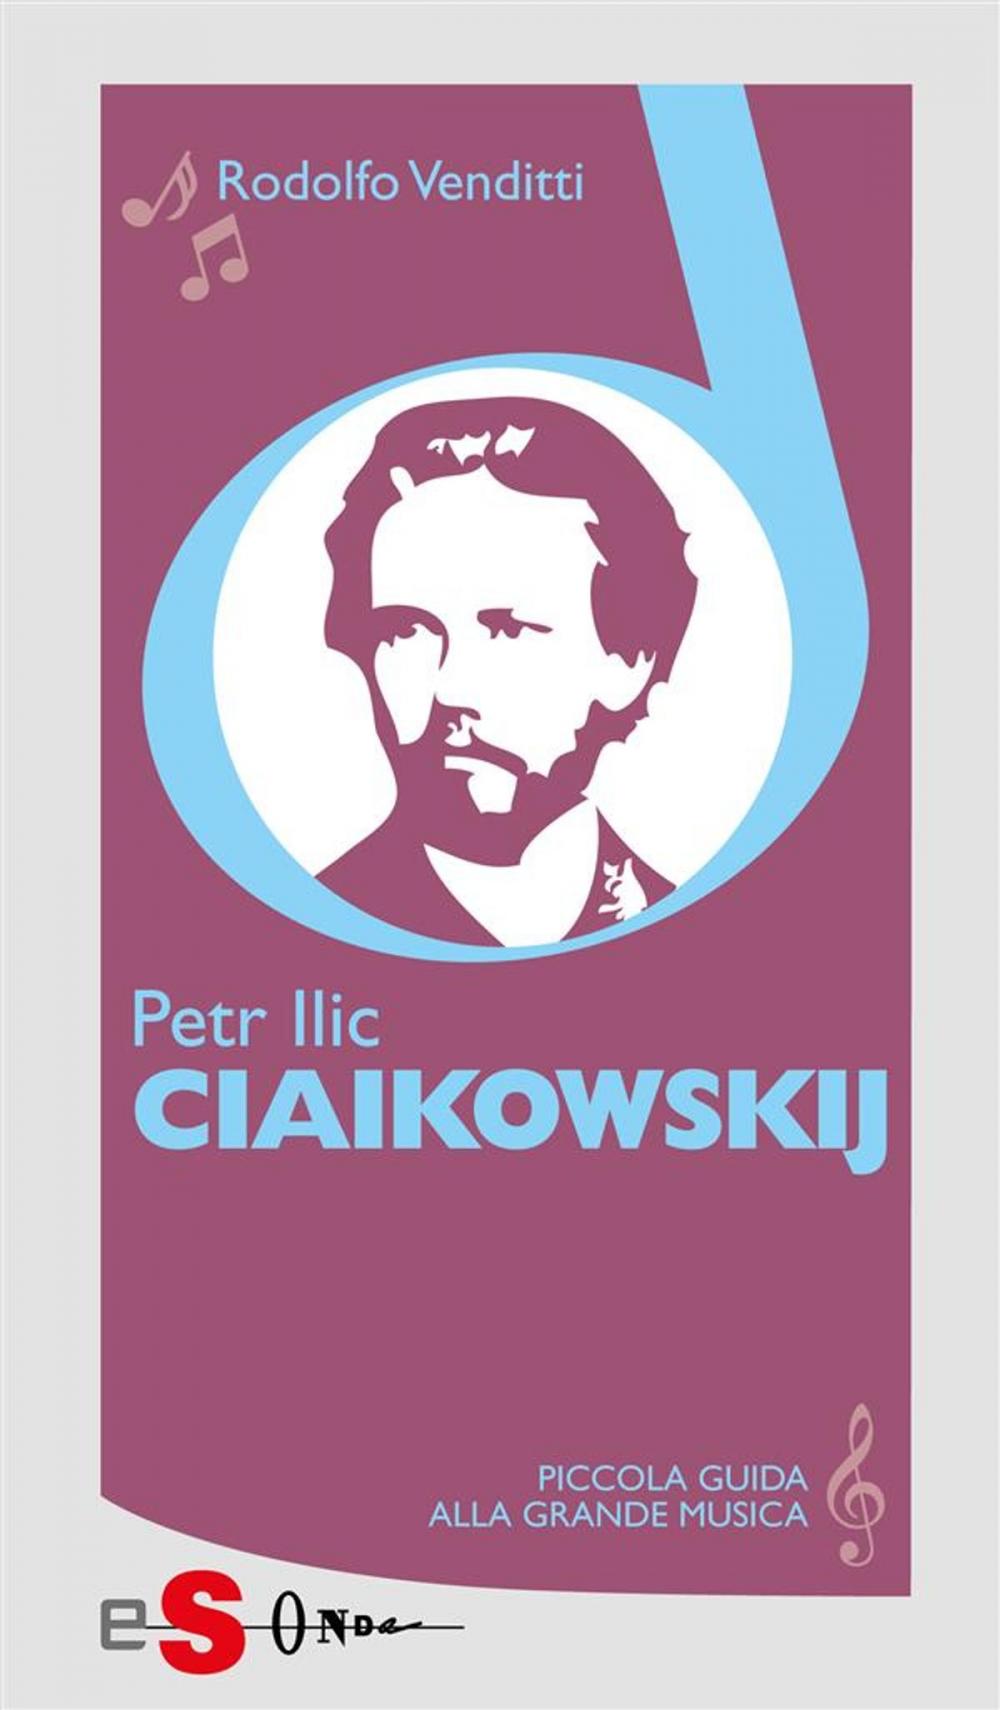 Big bigCover of Piccola guida alla grande musica - Petr Ilic Ciaikowskij